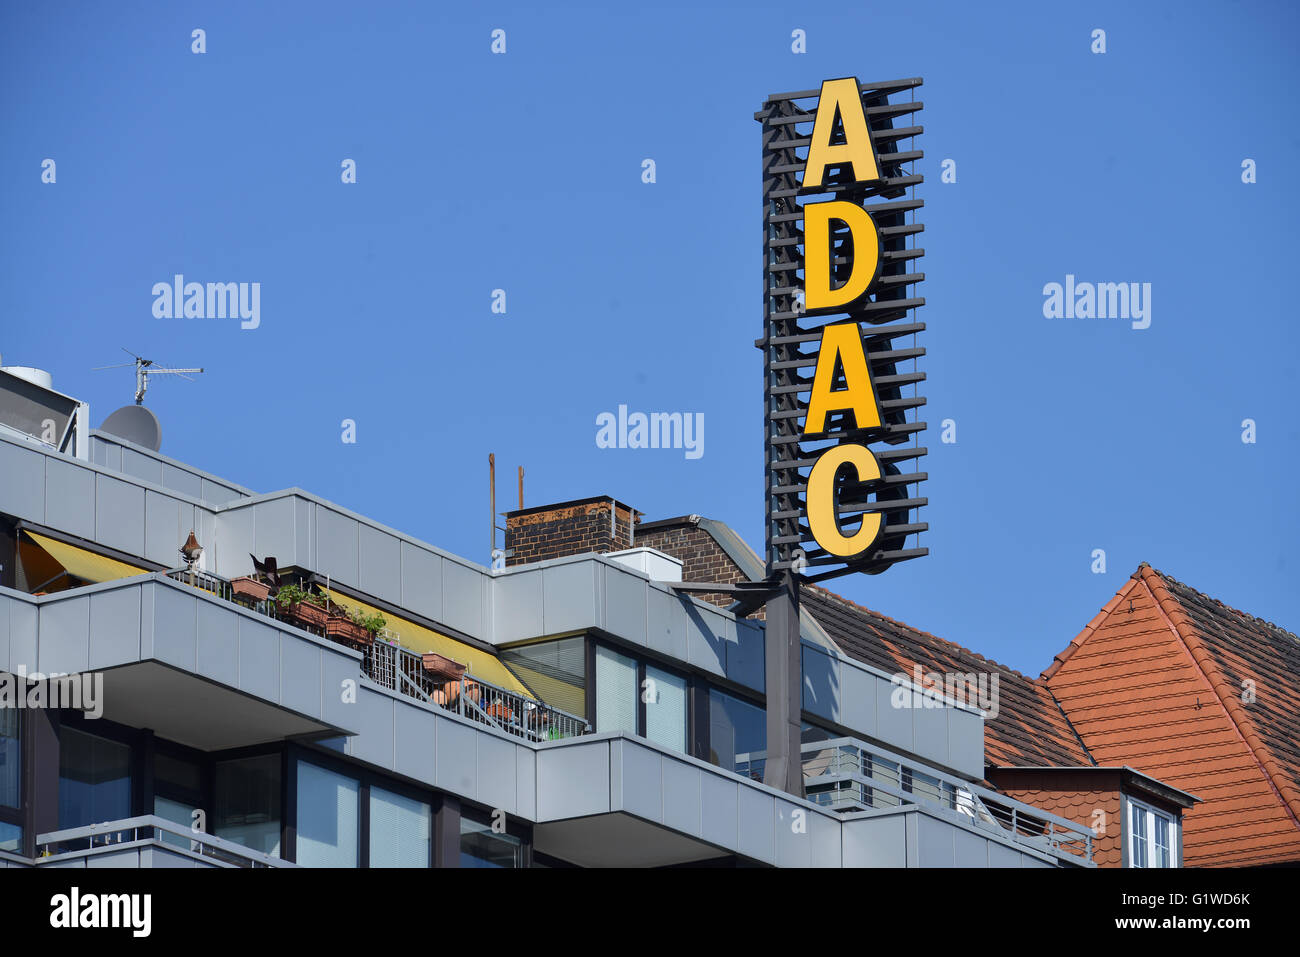 ADAC, Geschaeftsstelle, Bundesallee, Wilmersdorf, Berlin, Deutschland Stock Photo